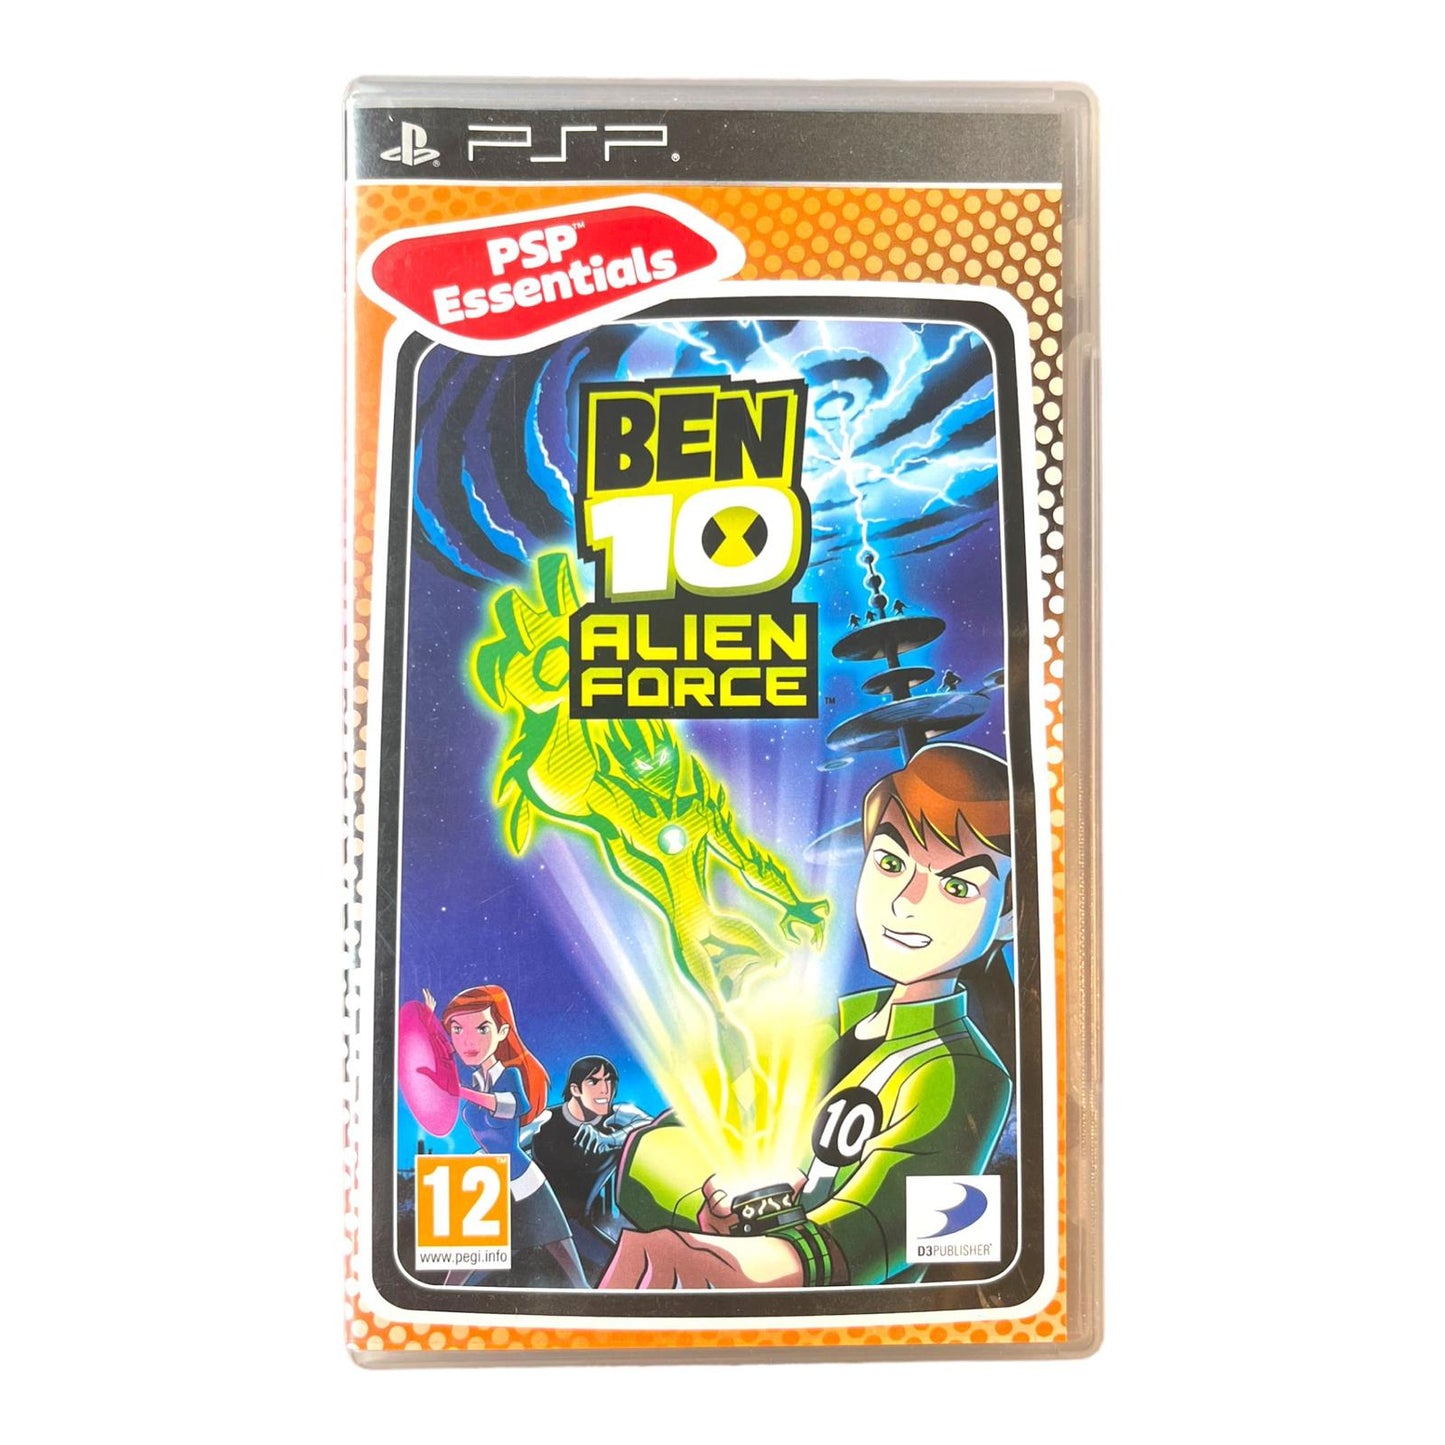 Ben 10 Alien Force - PSP Essentials